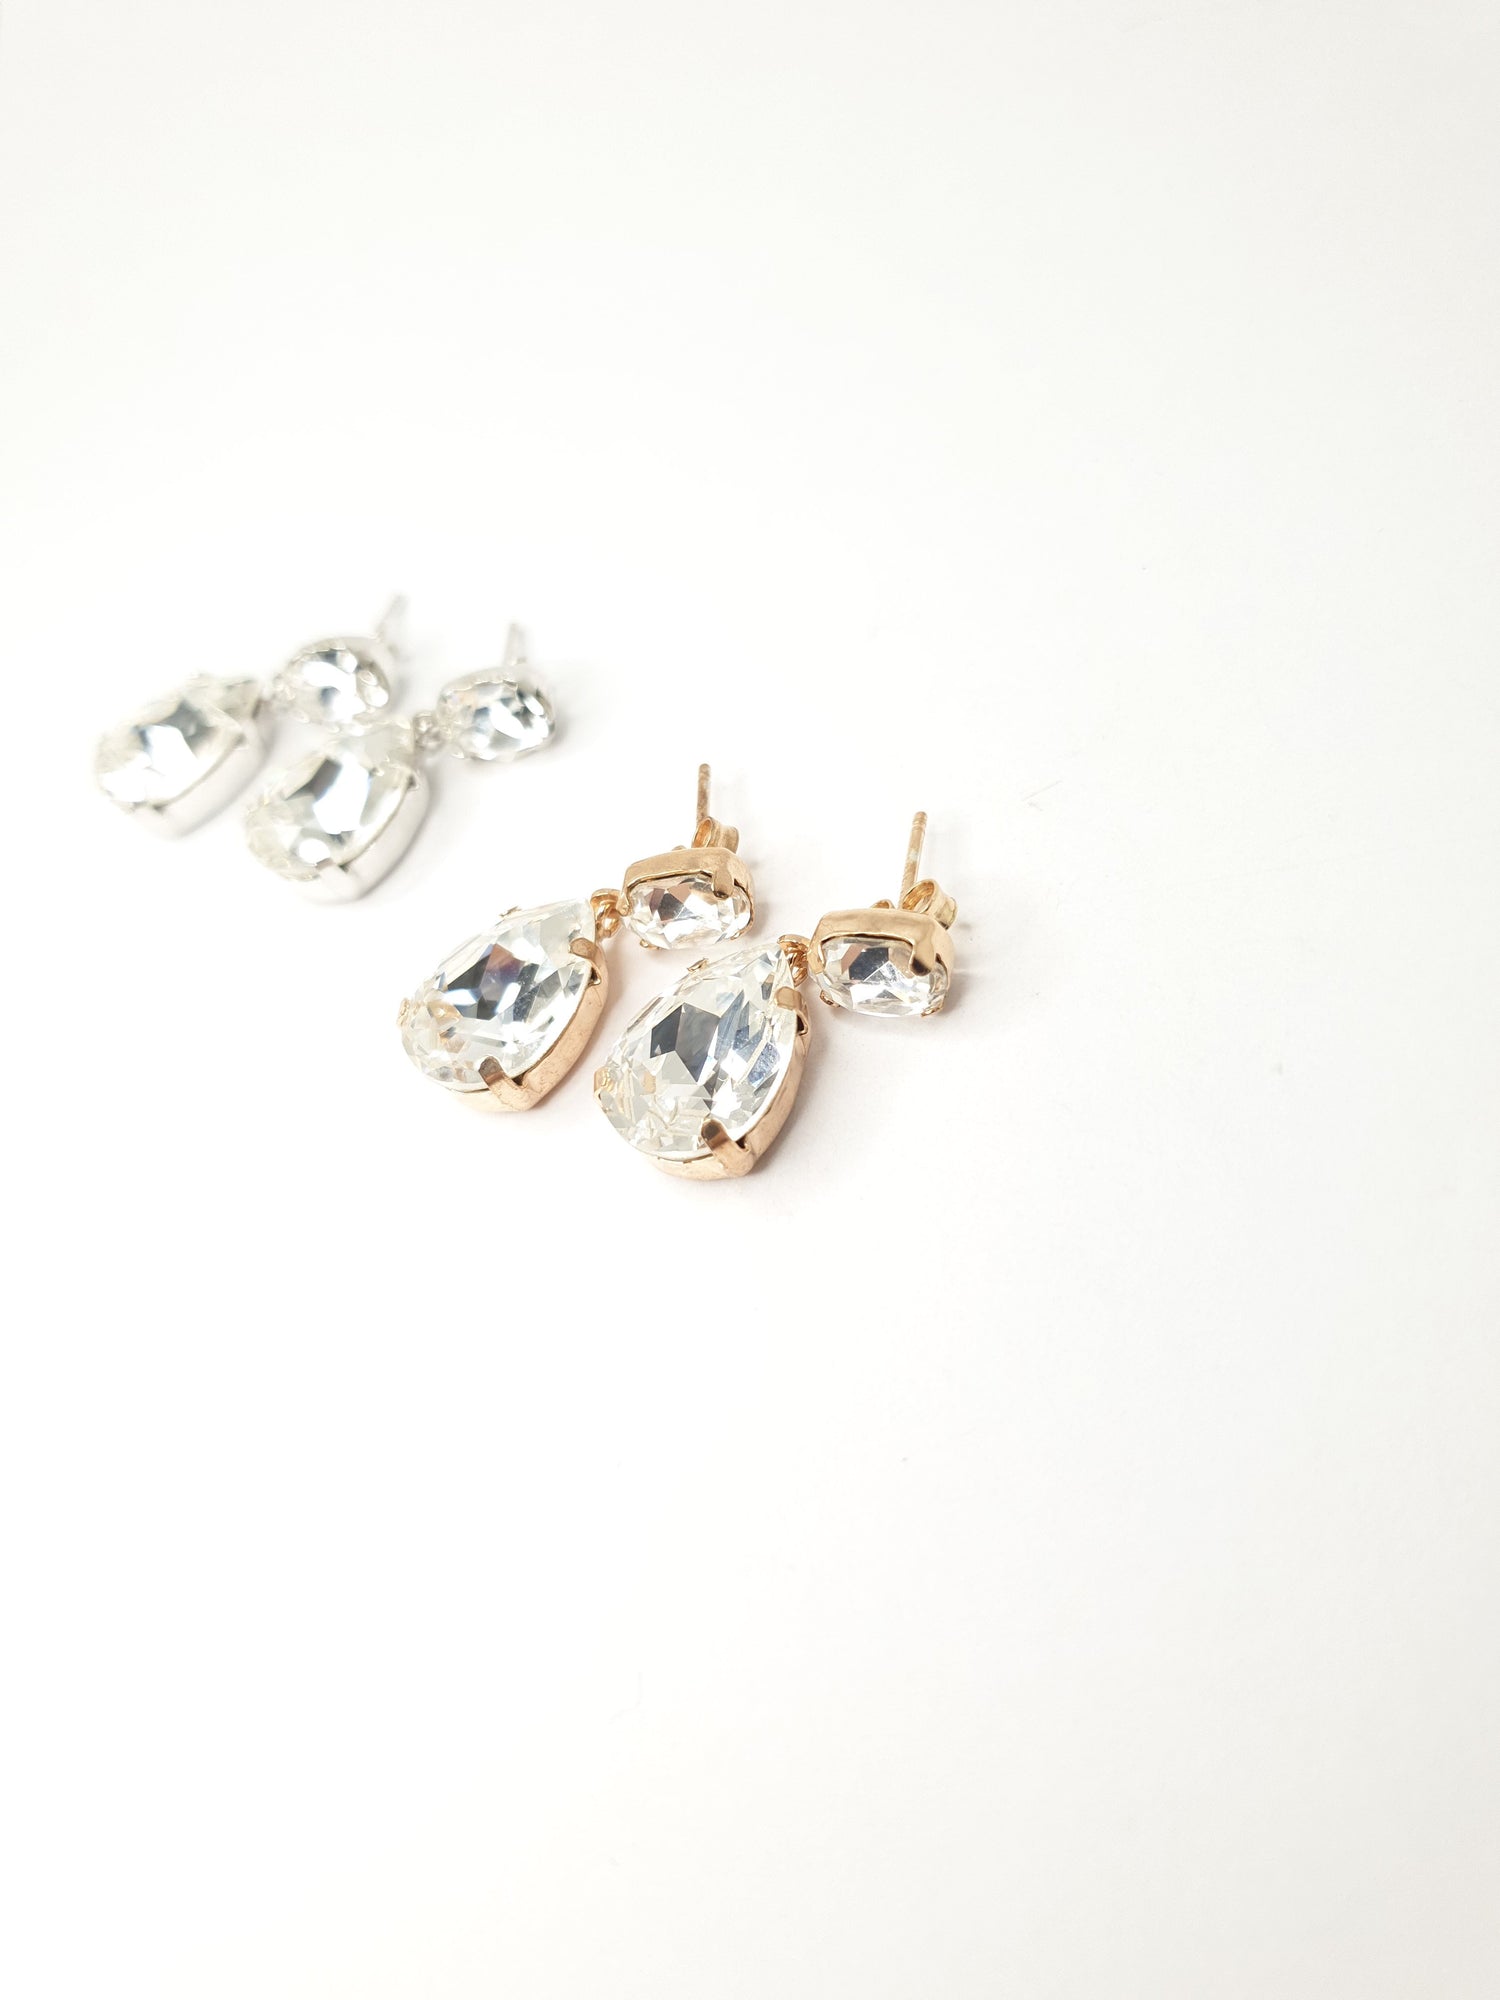 Hänge Ohrringe aus 925 Silber vergoldet mit großen weißen Swarovski Kristallen, je Ohrring zwei ovale Kristalle, einer oben und einer unten.